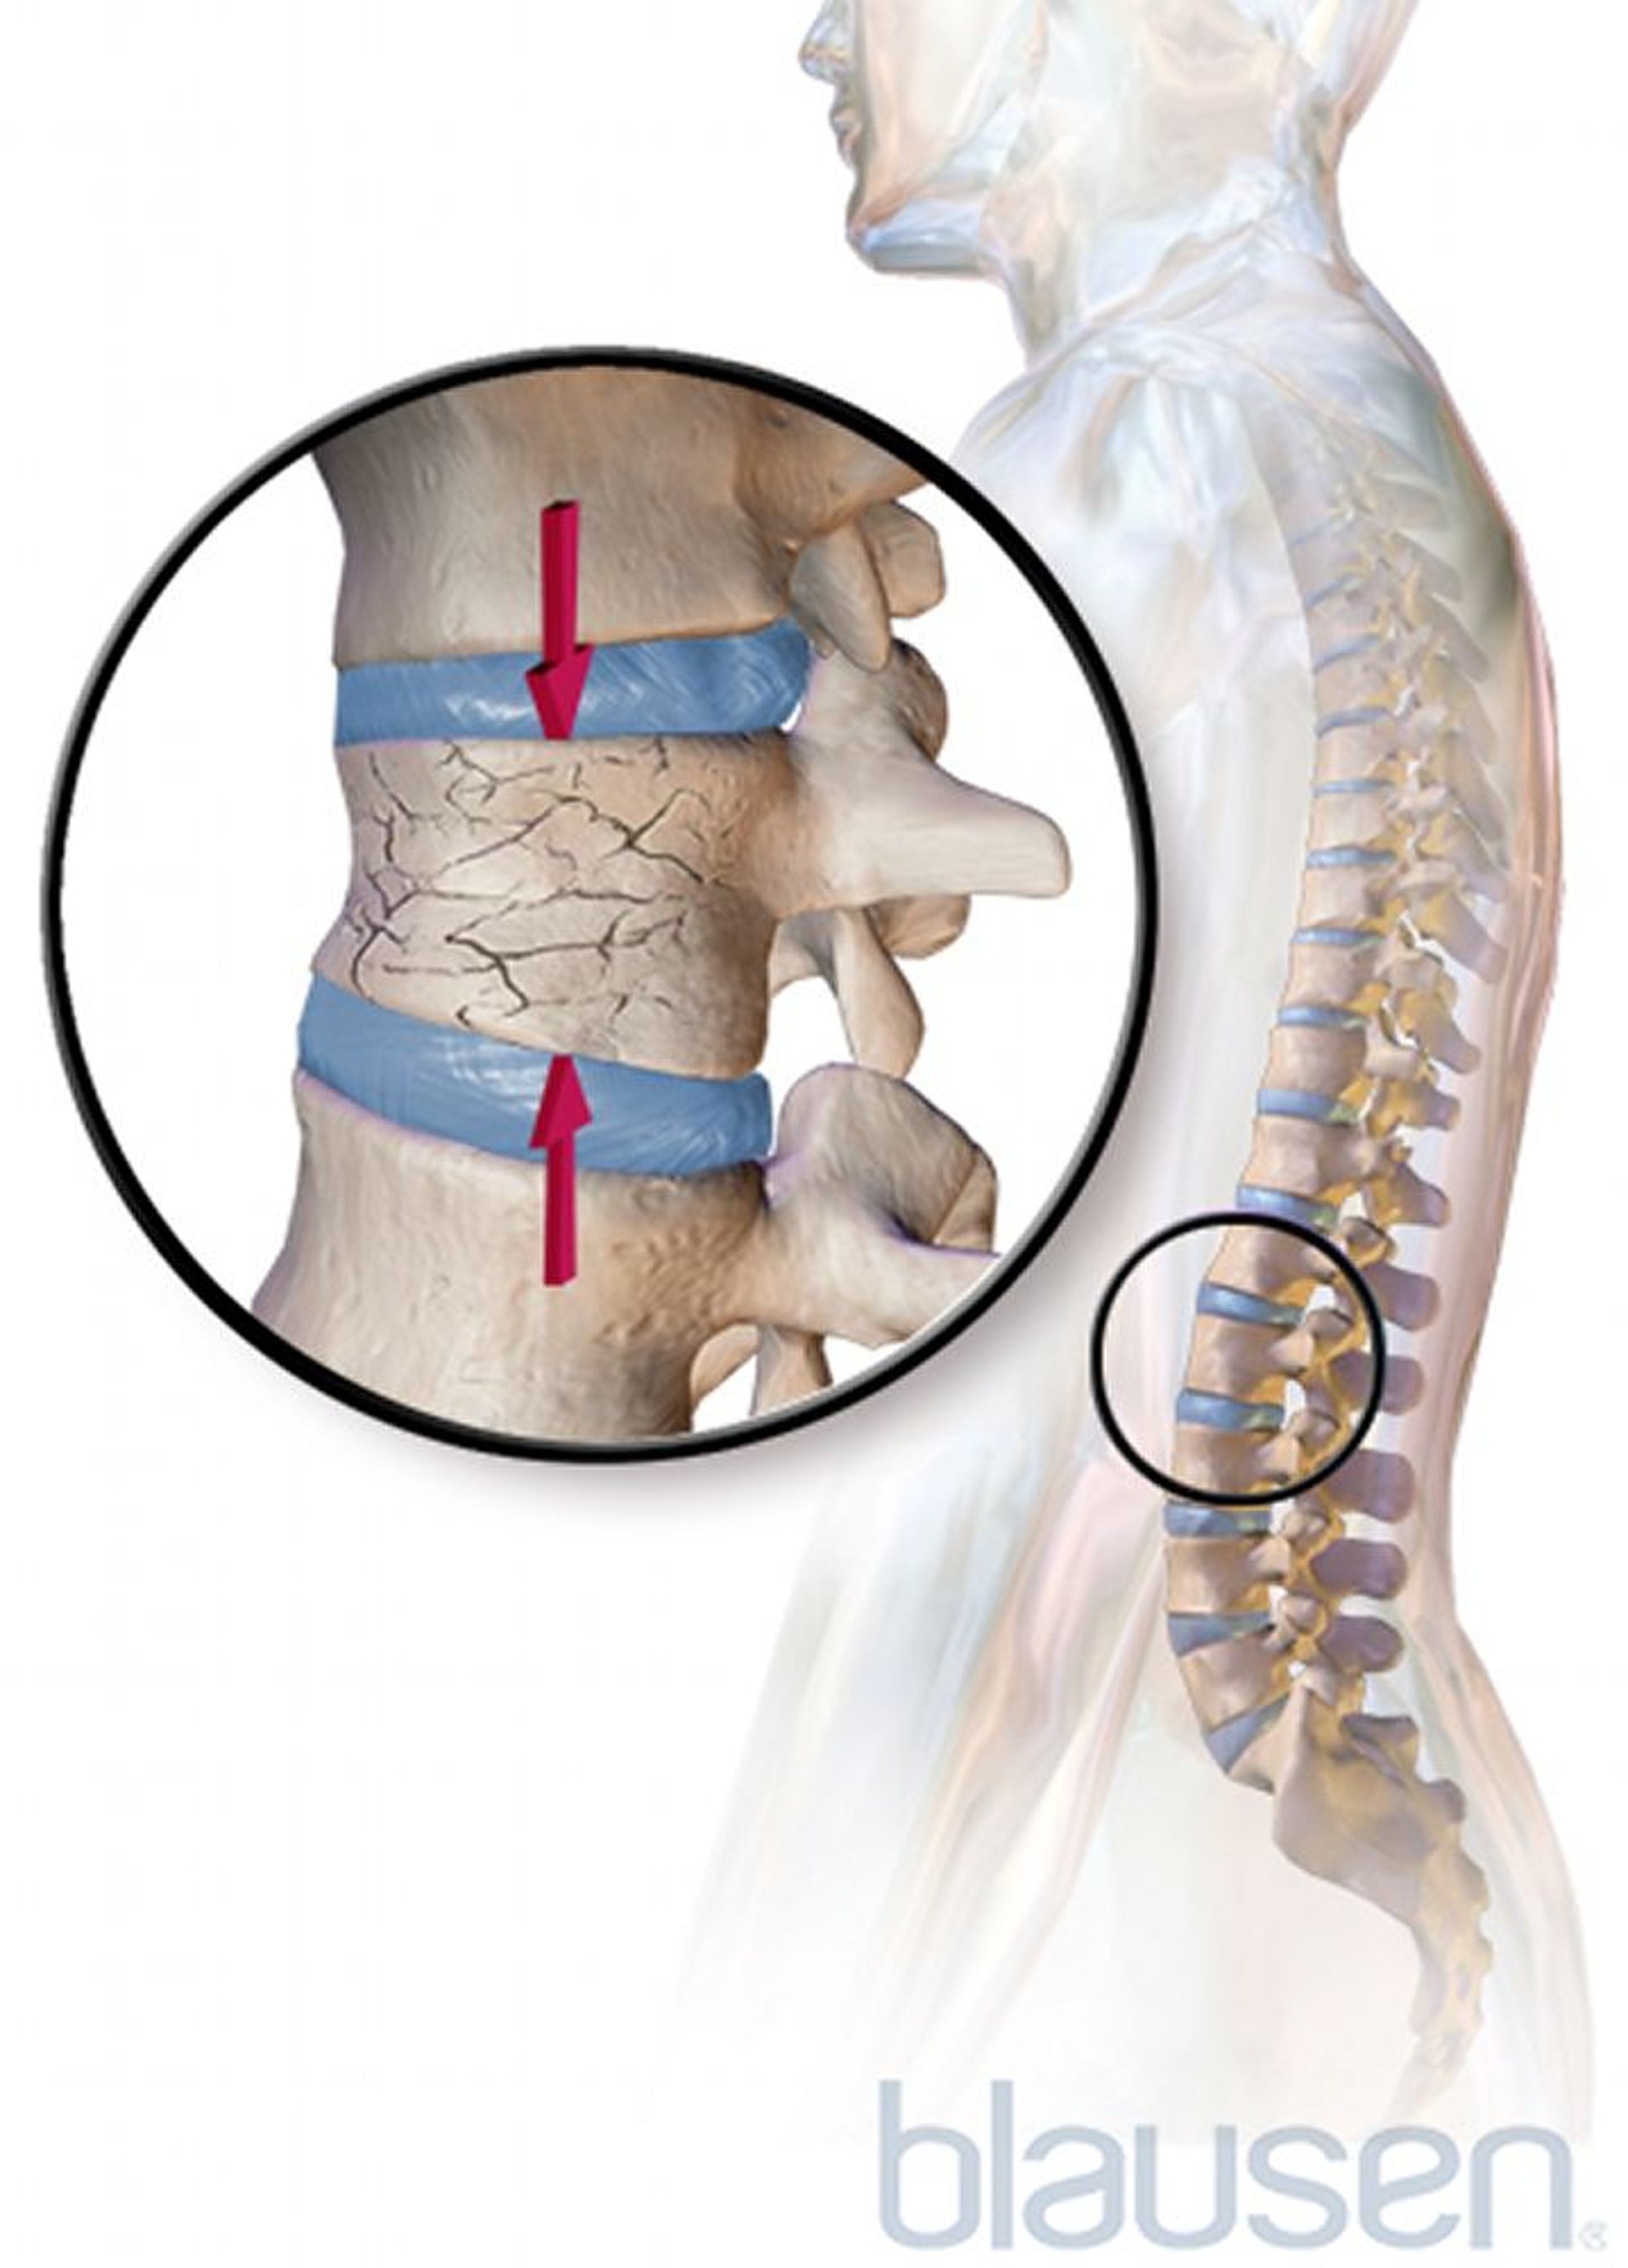 Fractura por compresión de la columna vertebral debida a osteoporosis